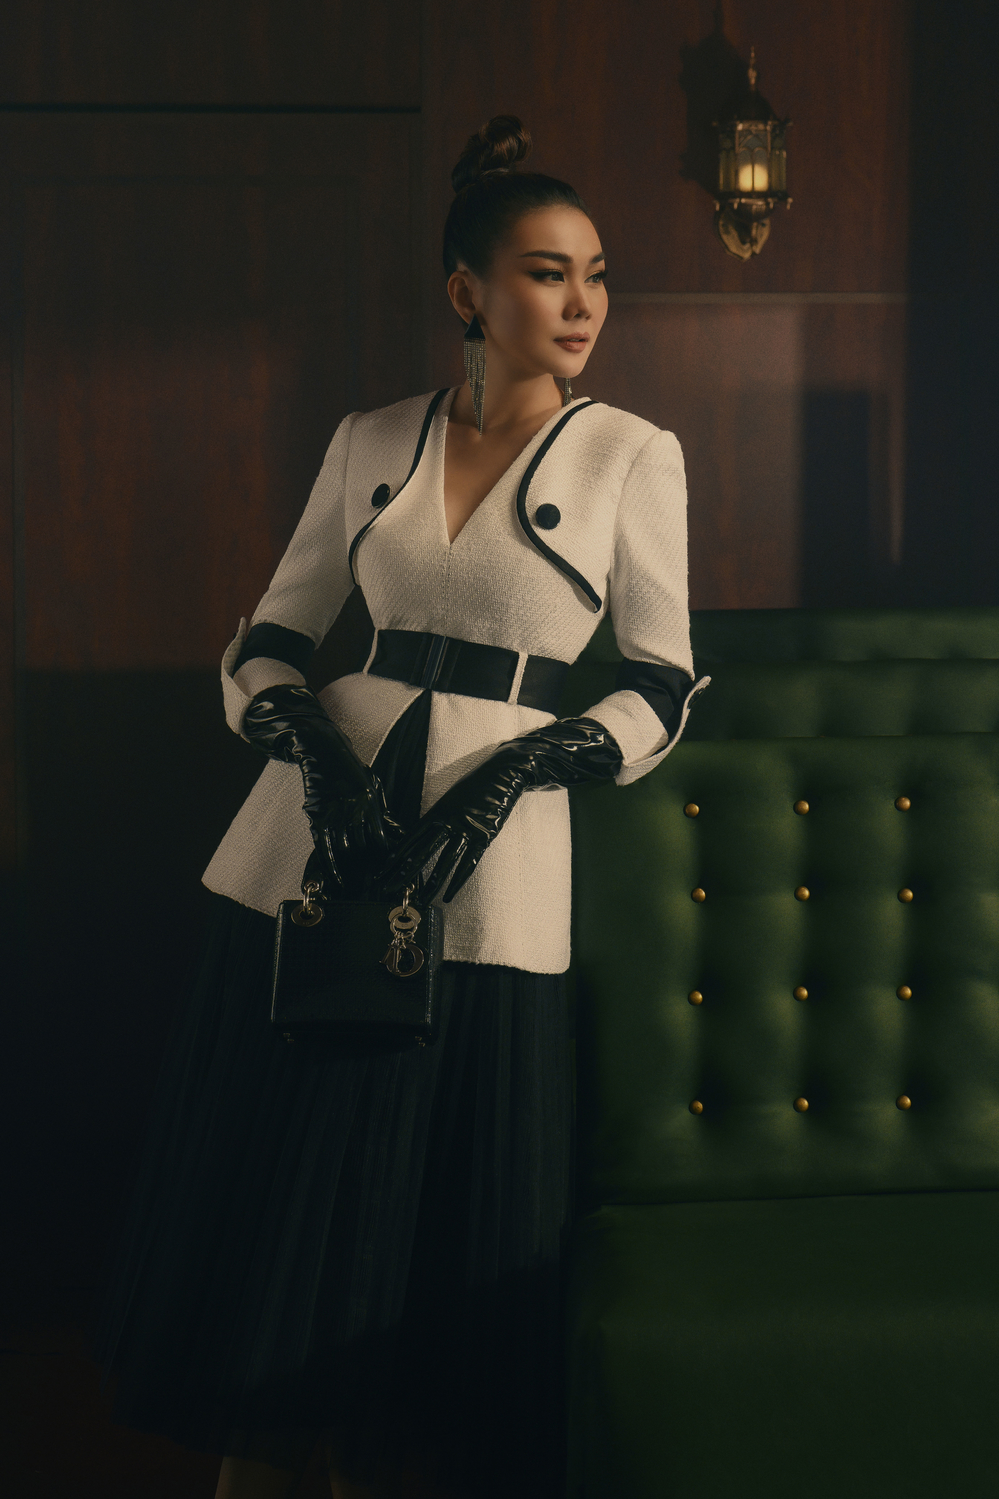 
Thanh Hằng thể hiện sự độc tôn với vị trí số 1 của siêu mẫu trong những thước hình thời trang. Cô chọn thiết kế màu trắng với chất liệu vải tweed cùng sự nhấn nhá từ đường gân kẻ đen hòa quyện. 